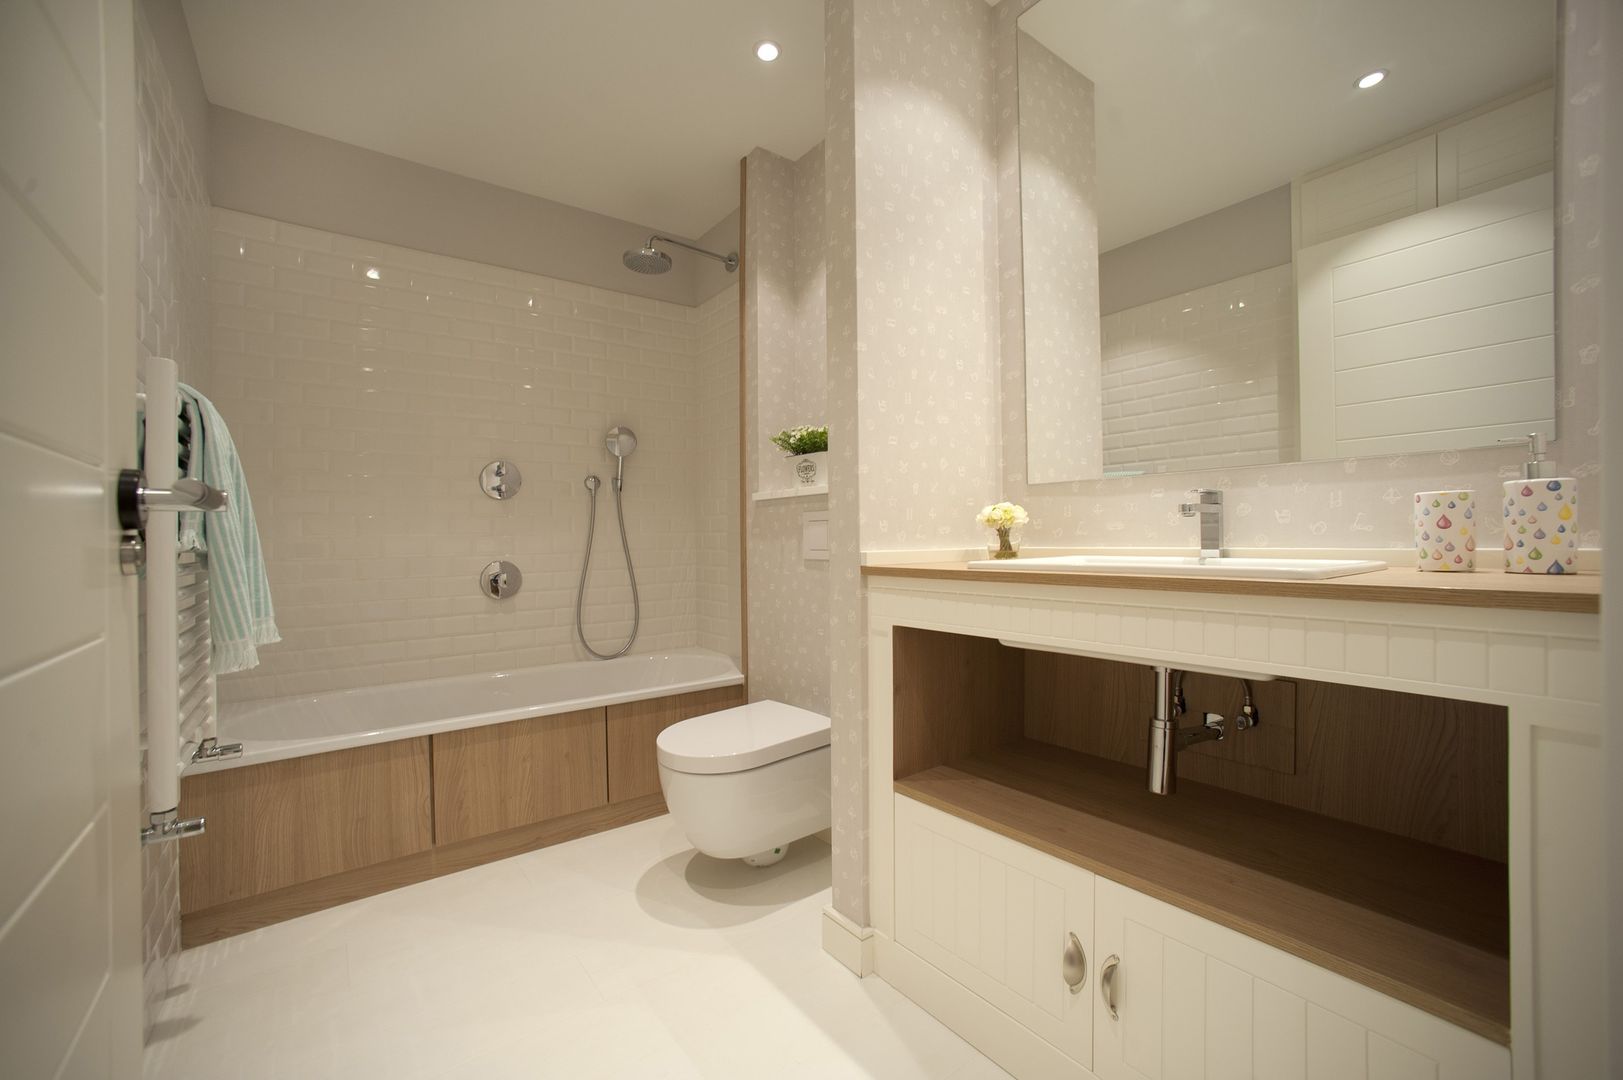 Reforma de vivienda en madera, blanco y tonos azules Sube Interiorismo Baños de estilo clásico bañera,iluminación para el cuarto de baño,mobiliario para el cuarto de baño,lavabo,pavimento del cuarto de baño,espejo del cuarto de baño,casa blanca